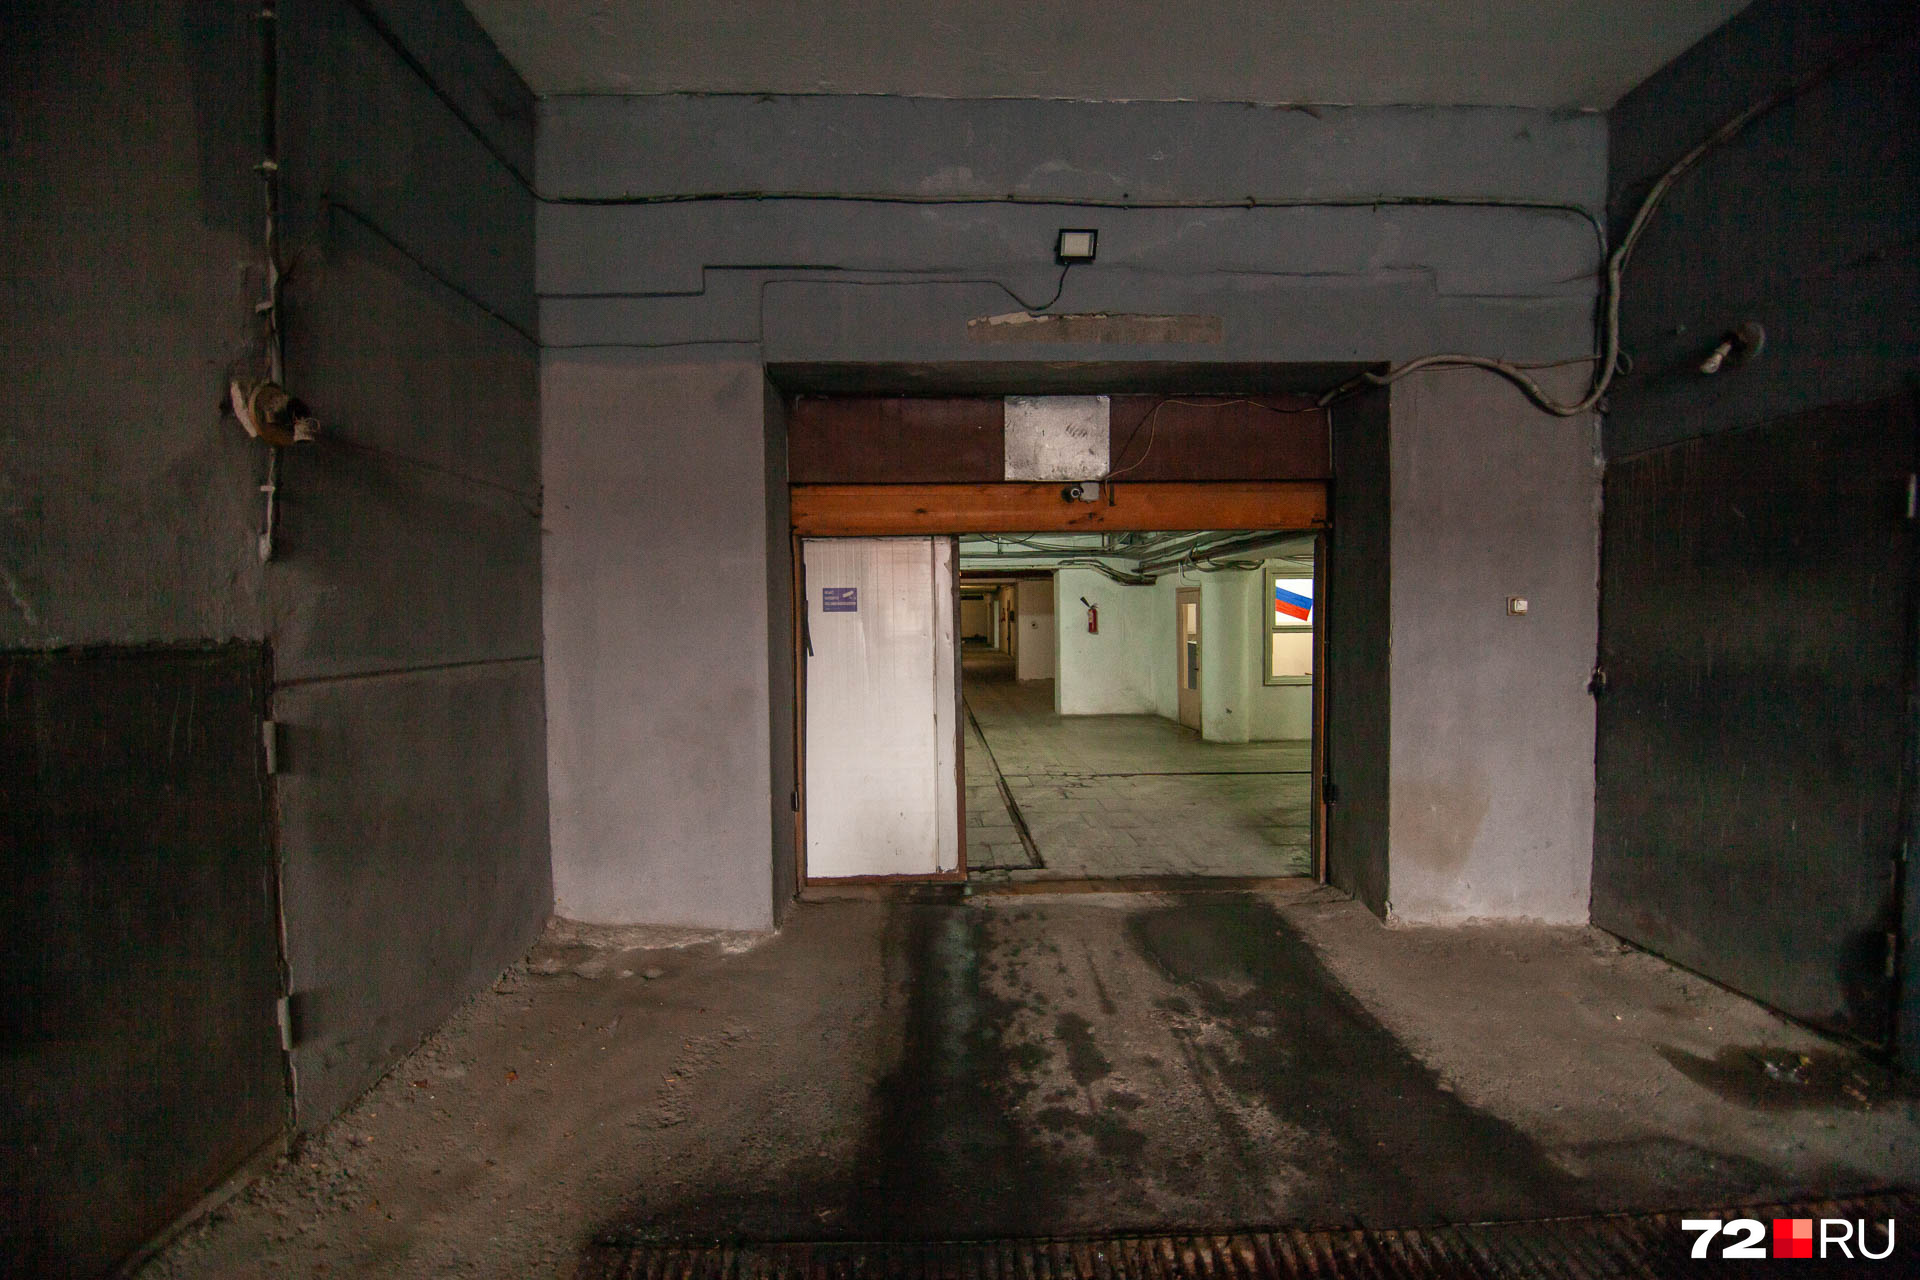 Въезд на подземную стоянку оборудован датчиками открывания ворот, предусмотрено уличное освещение